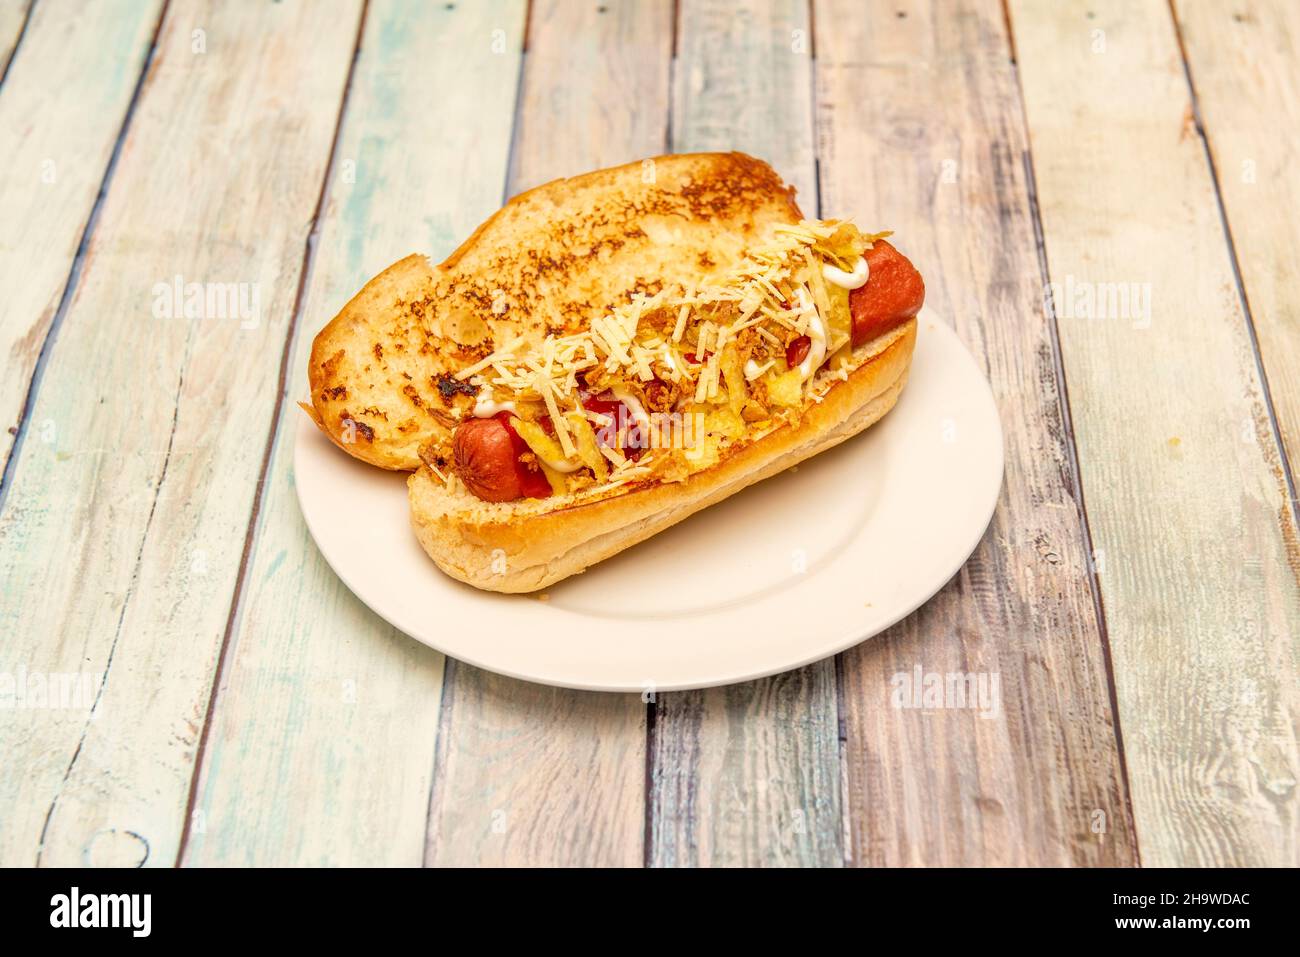 Hot dog speciale con pane brioche con salsiccia, formaggio grattugiato di senape, ketchup e maionese su piatto bianco Foto Stock